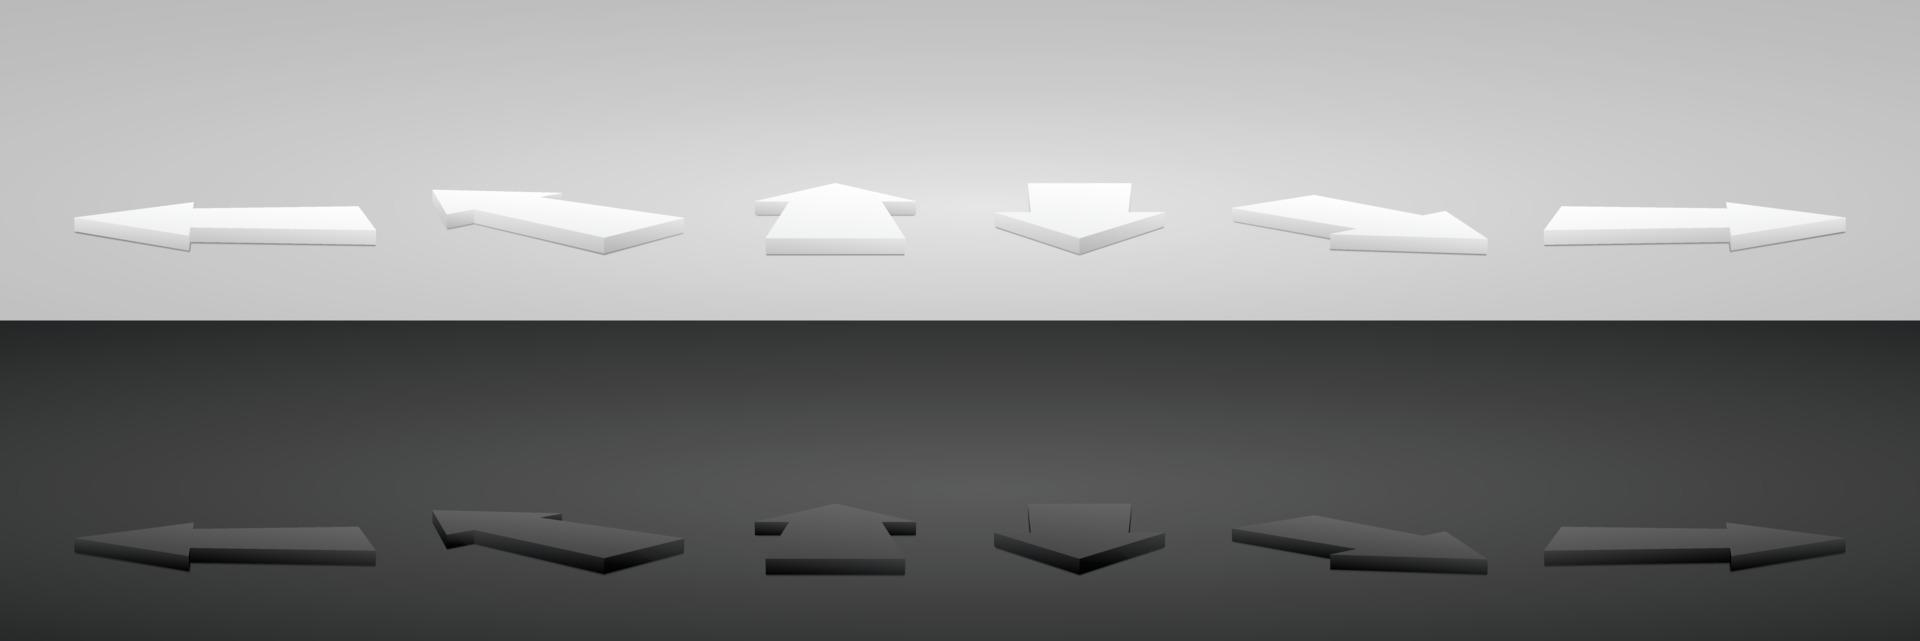 pil form visa podium på marken 3d illustration vektor samling